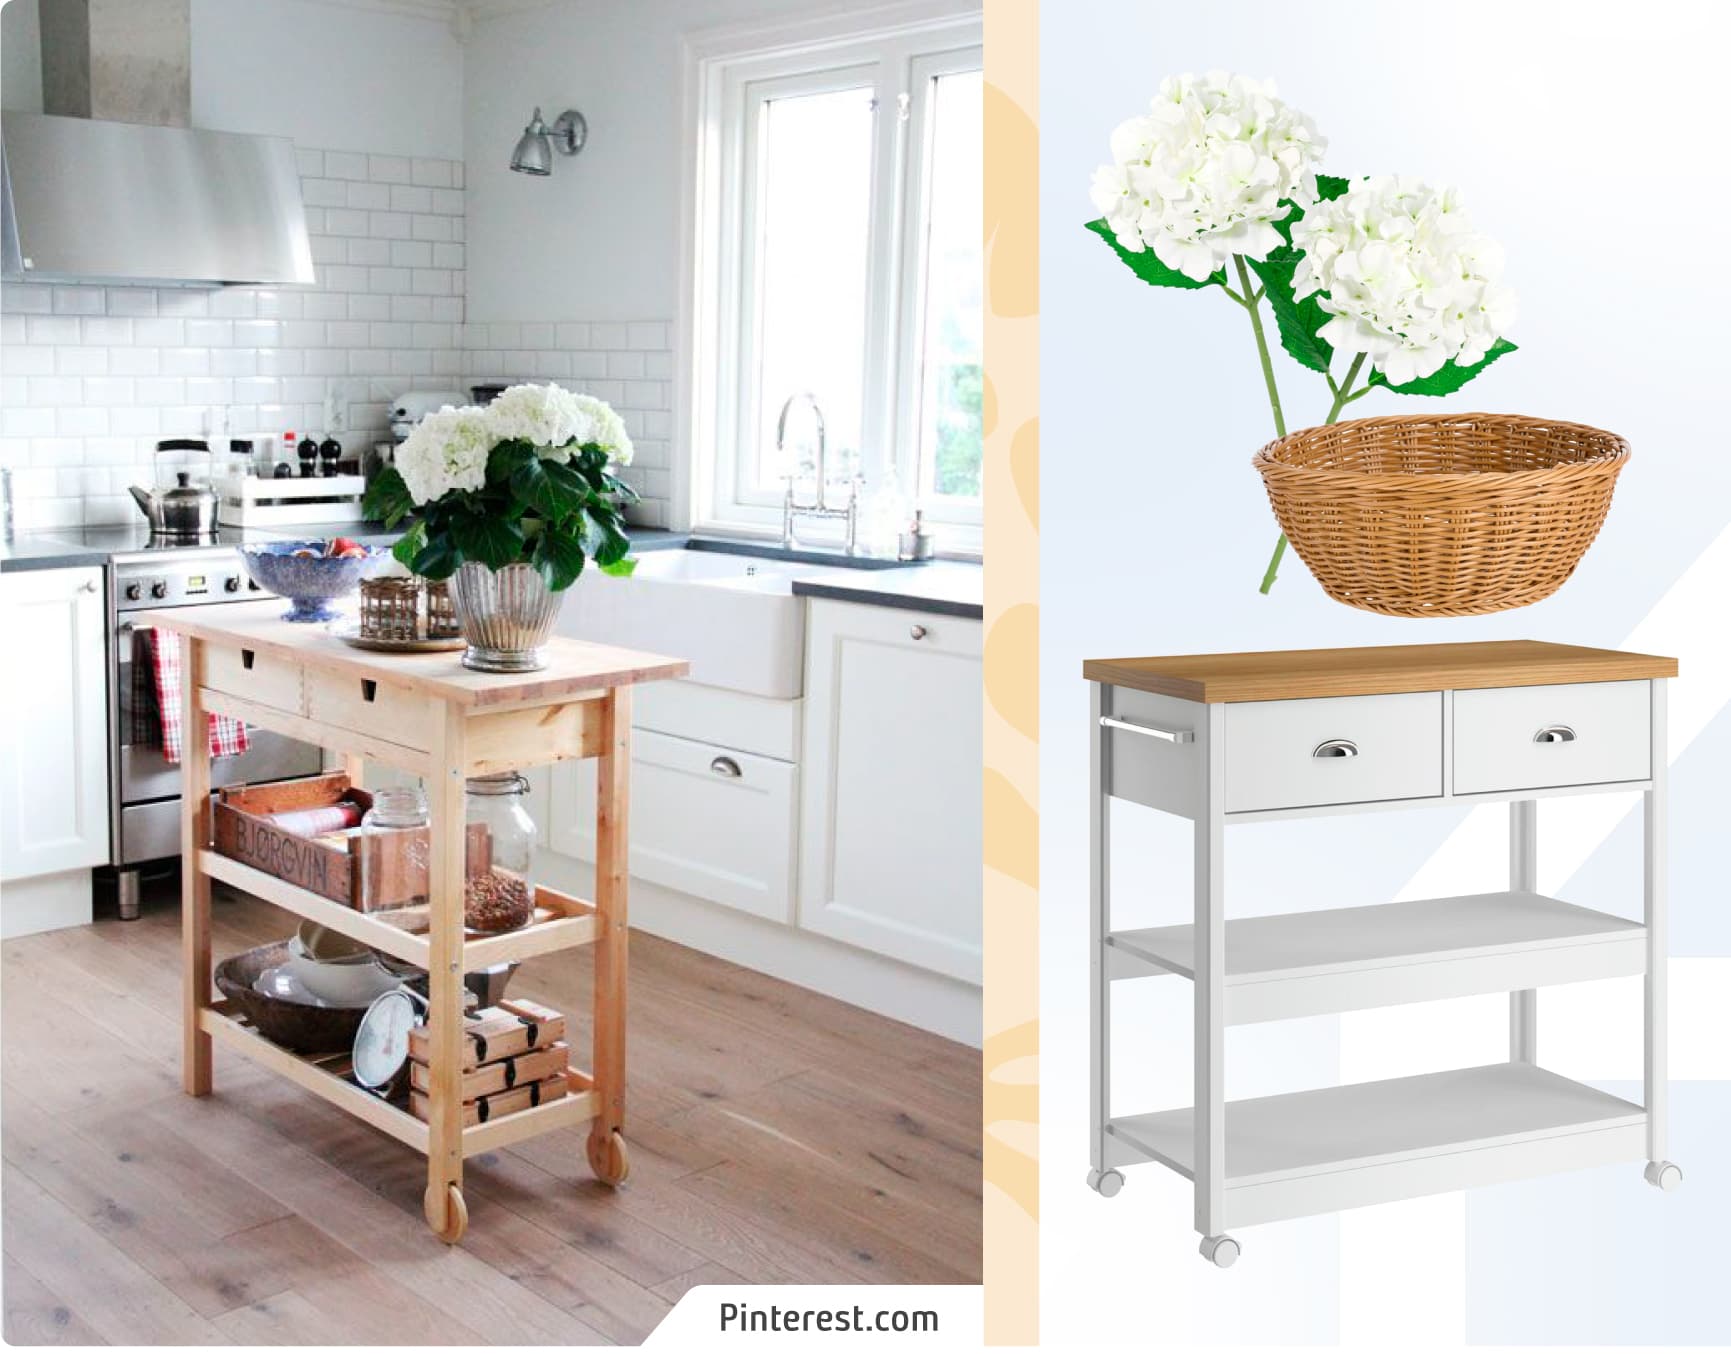 Moodboard Sodimac con foto de cocina con muebles multifuncionales. Los productos Sodimac son una isla de madera blanca con dos cajones, un canasto de mimbre y flores blancas